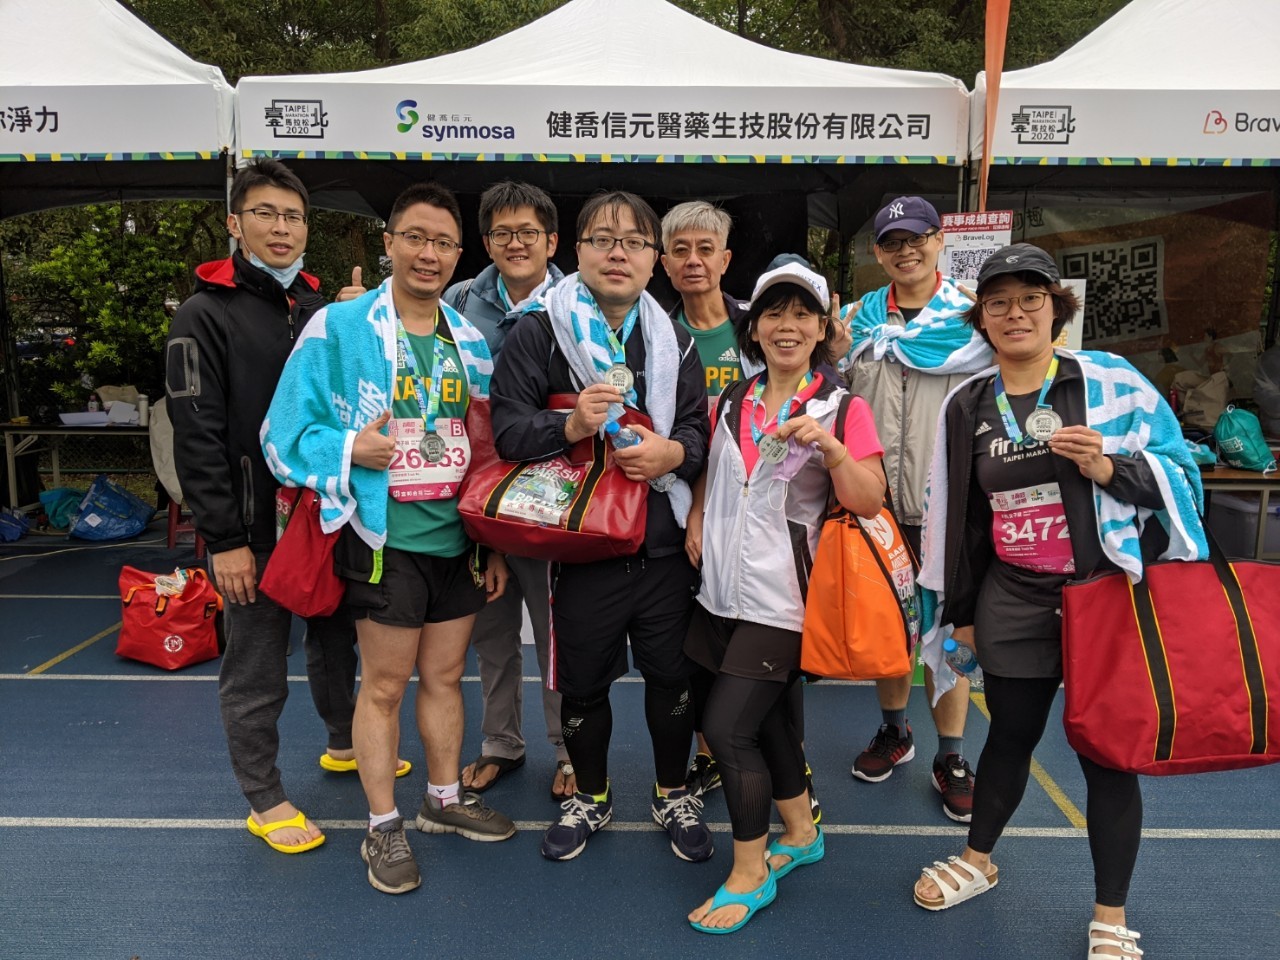 圖片說明-輸出入銀行同仁積極參與核心客戶「健喬集團」贊助之2020台北國際馬拉松路跑活動